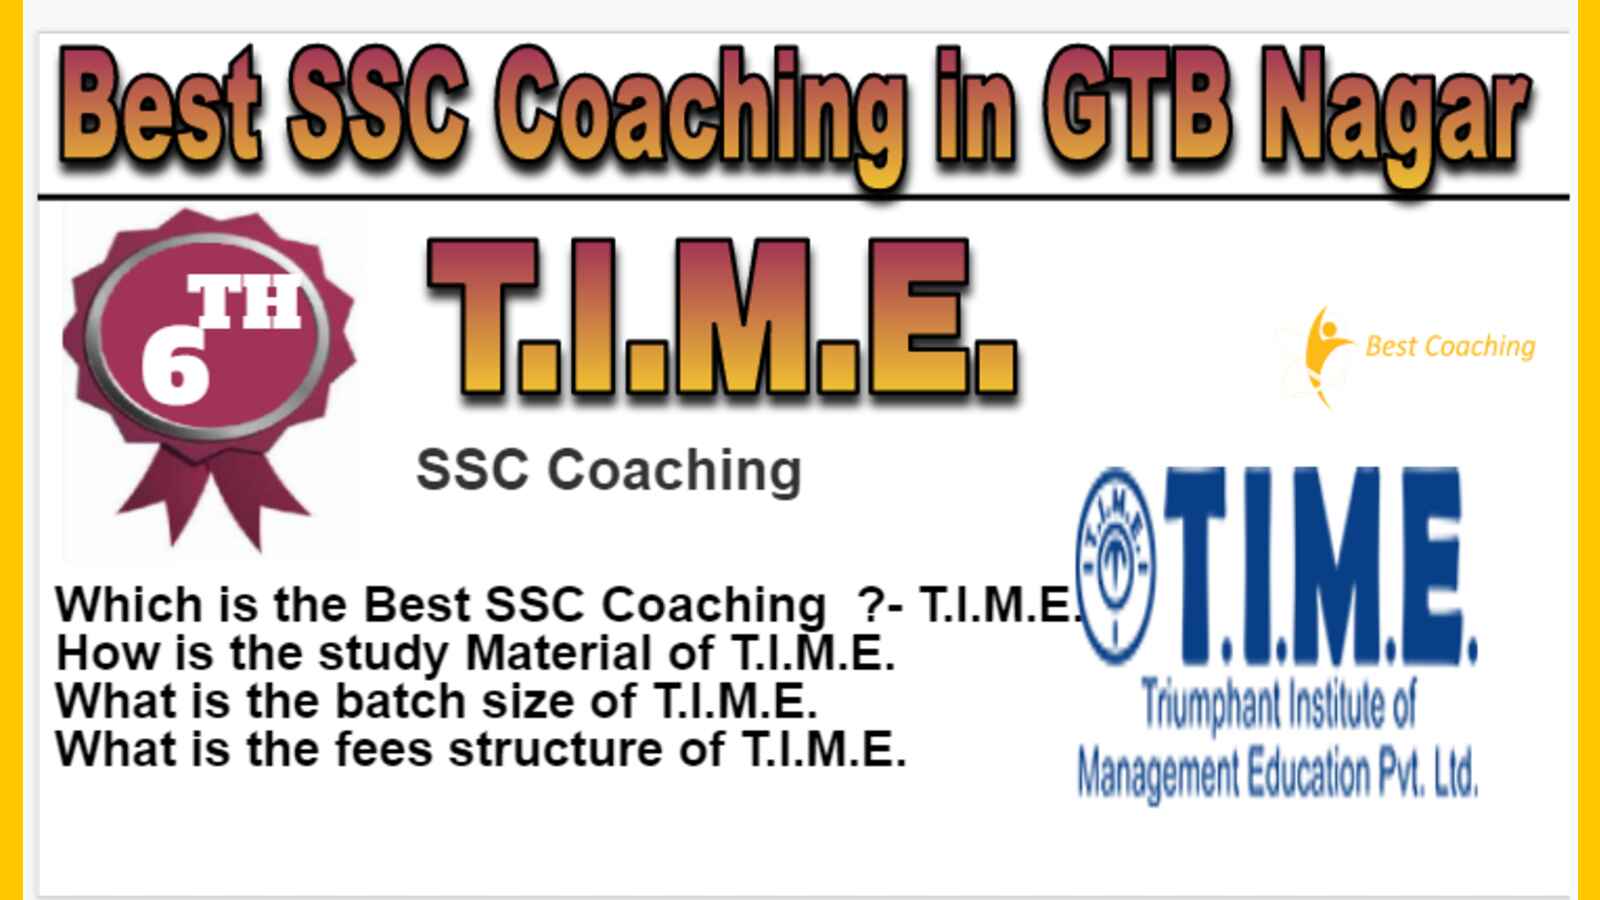 Rank 6 Best SSC Coaching in GTB Nagar